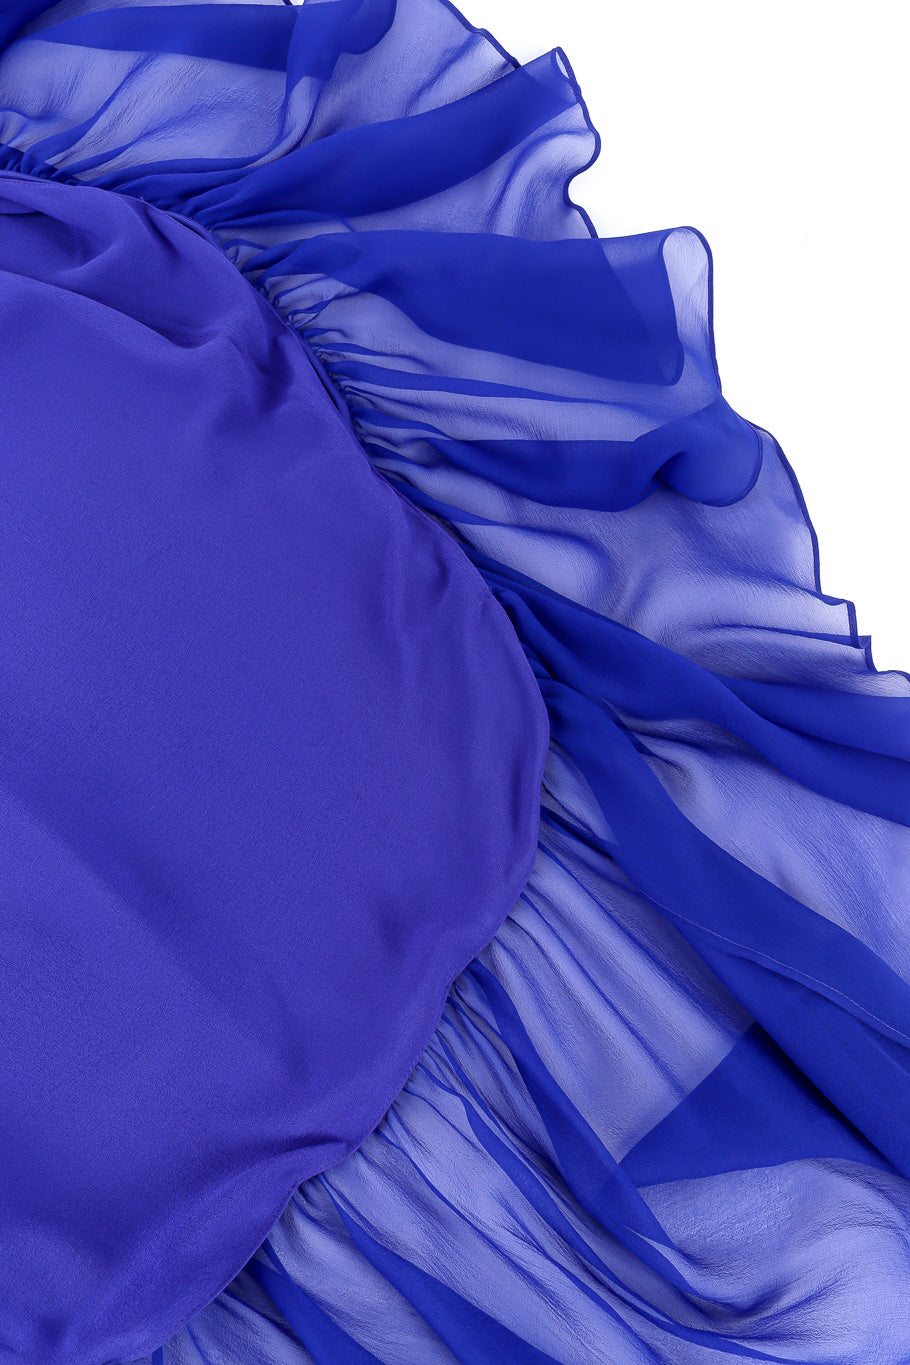 Saint Laurent 2020 Fall Sheer Silk Ruffle Dress hem closeup @Recessla